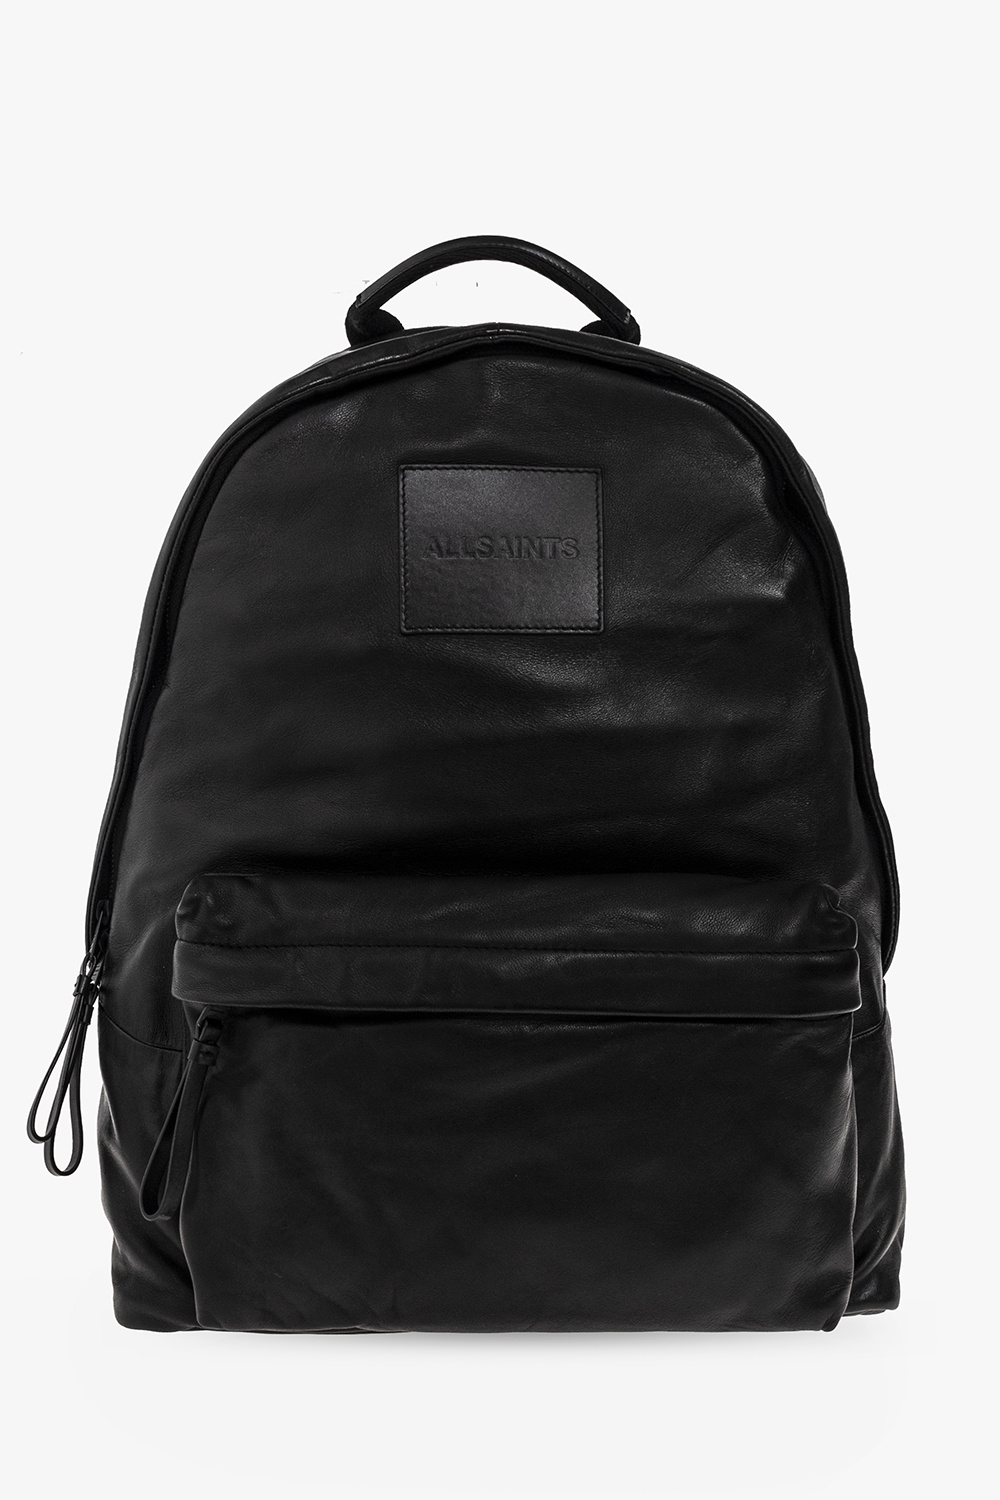 AllSaints ‘Carabiner’ leather backpack